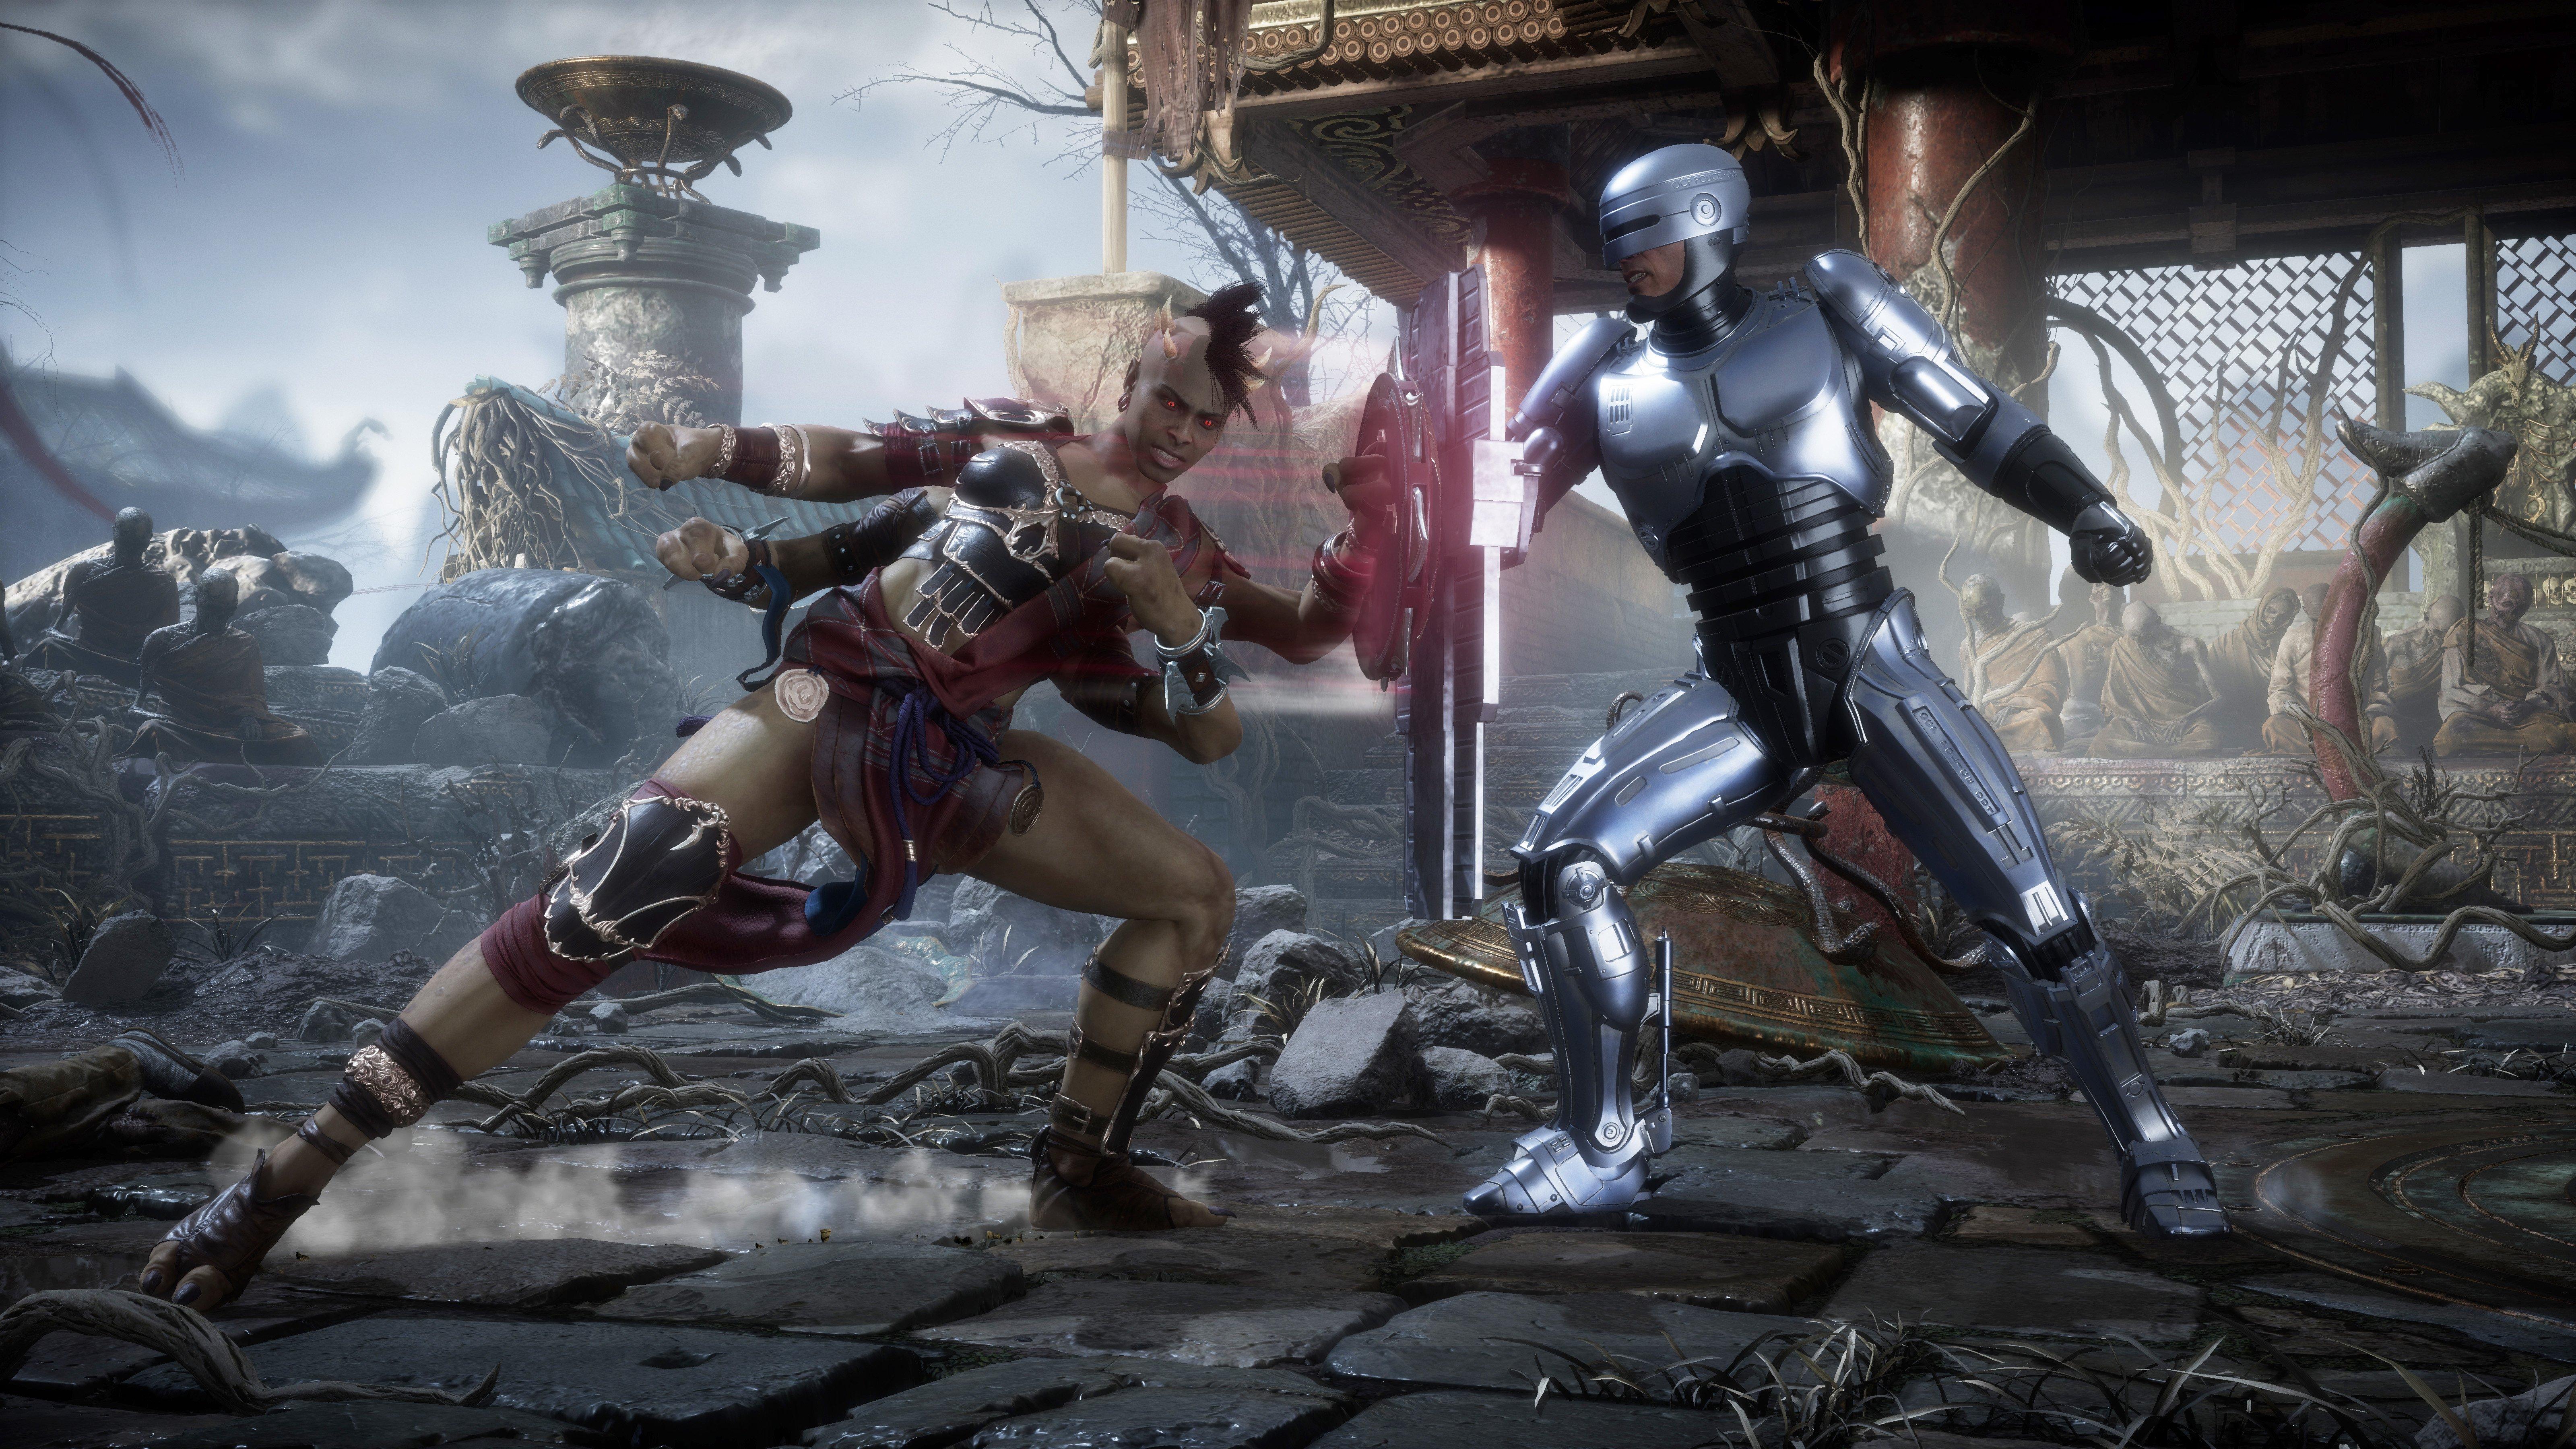 Mortal Kombat 11: O que sabemos sobre a DLC até o momento